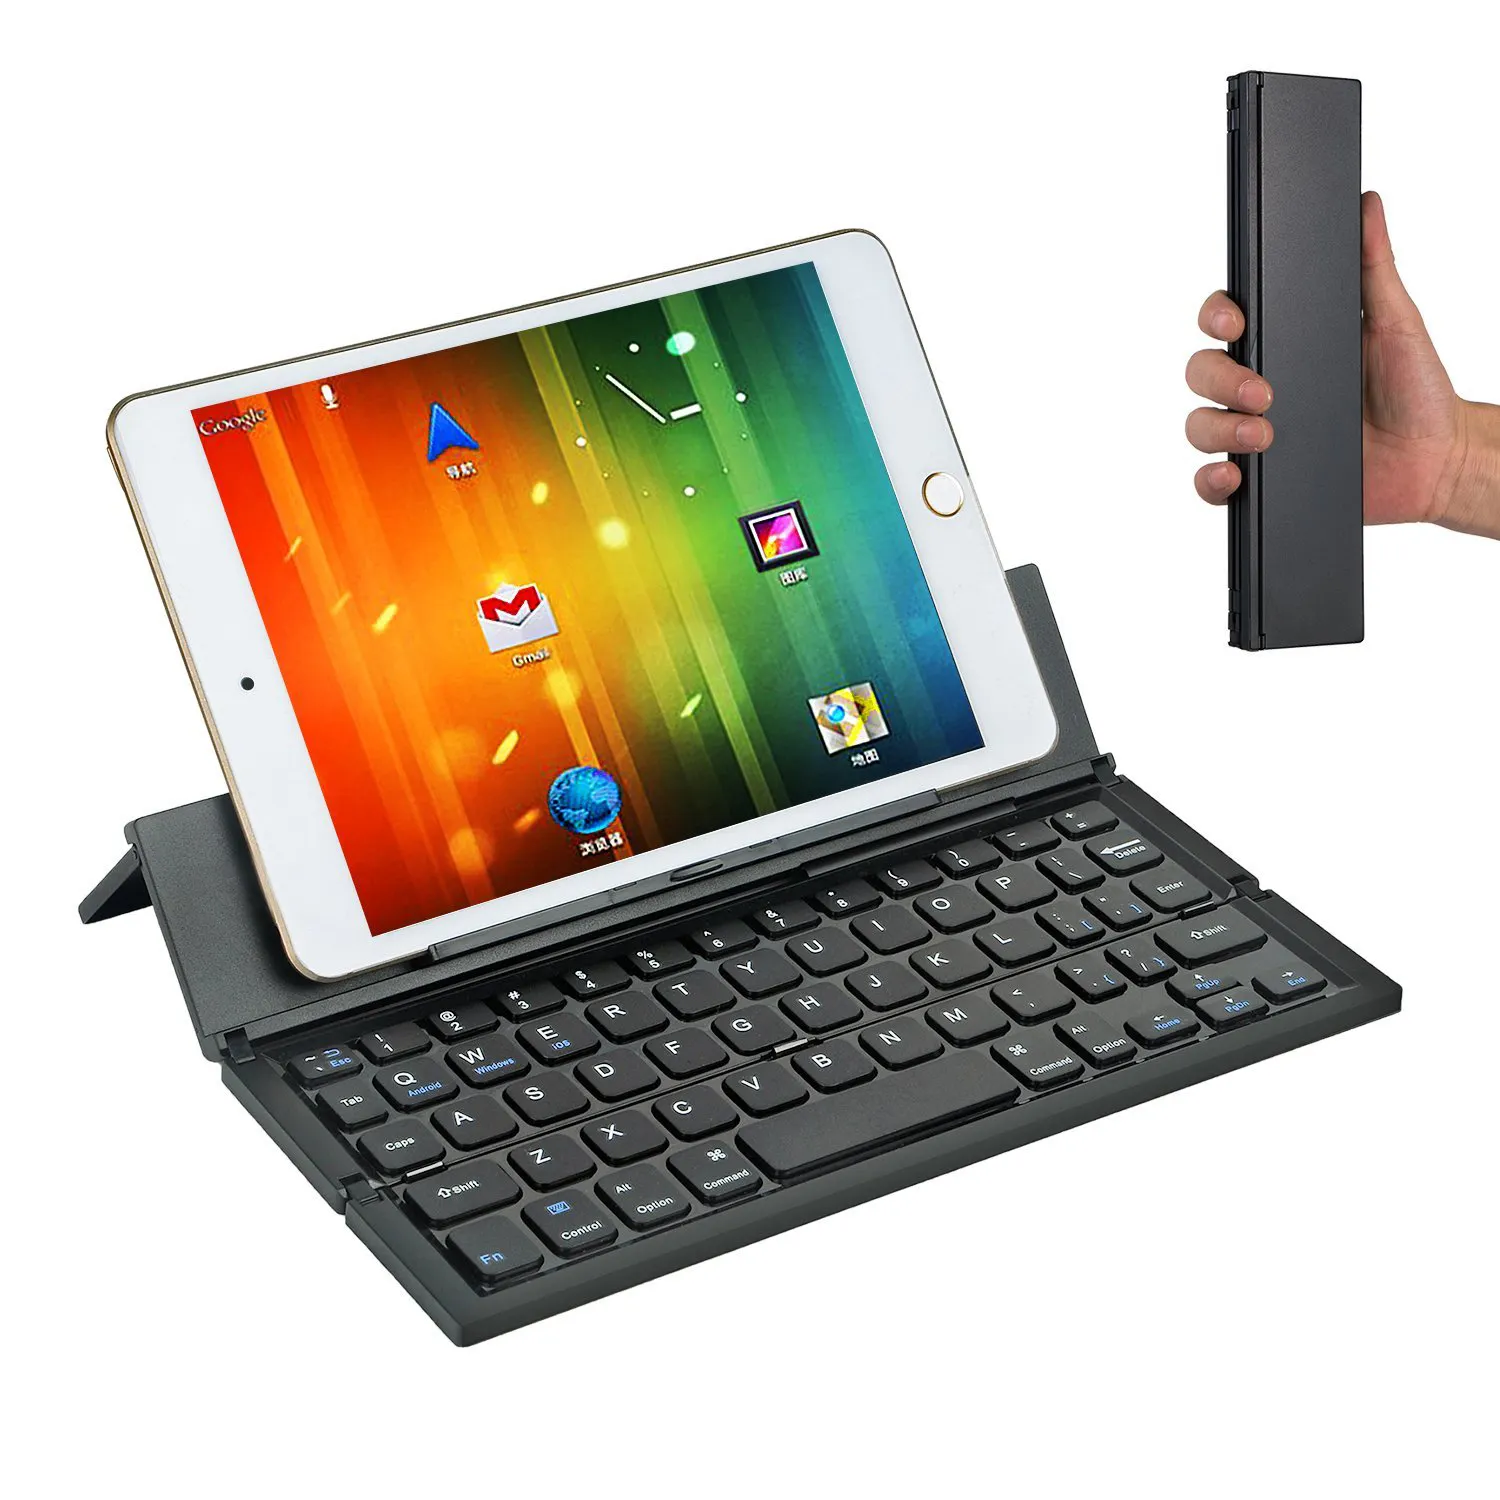 Ipad ios 13 androidタブレットpc携帯電話ポータブル折りたたみキーボードBKC888用の金属製折りたたみ式ブルートゥースキーボード